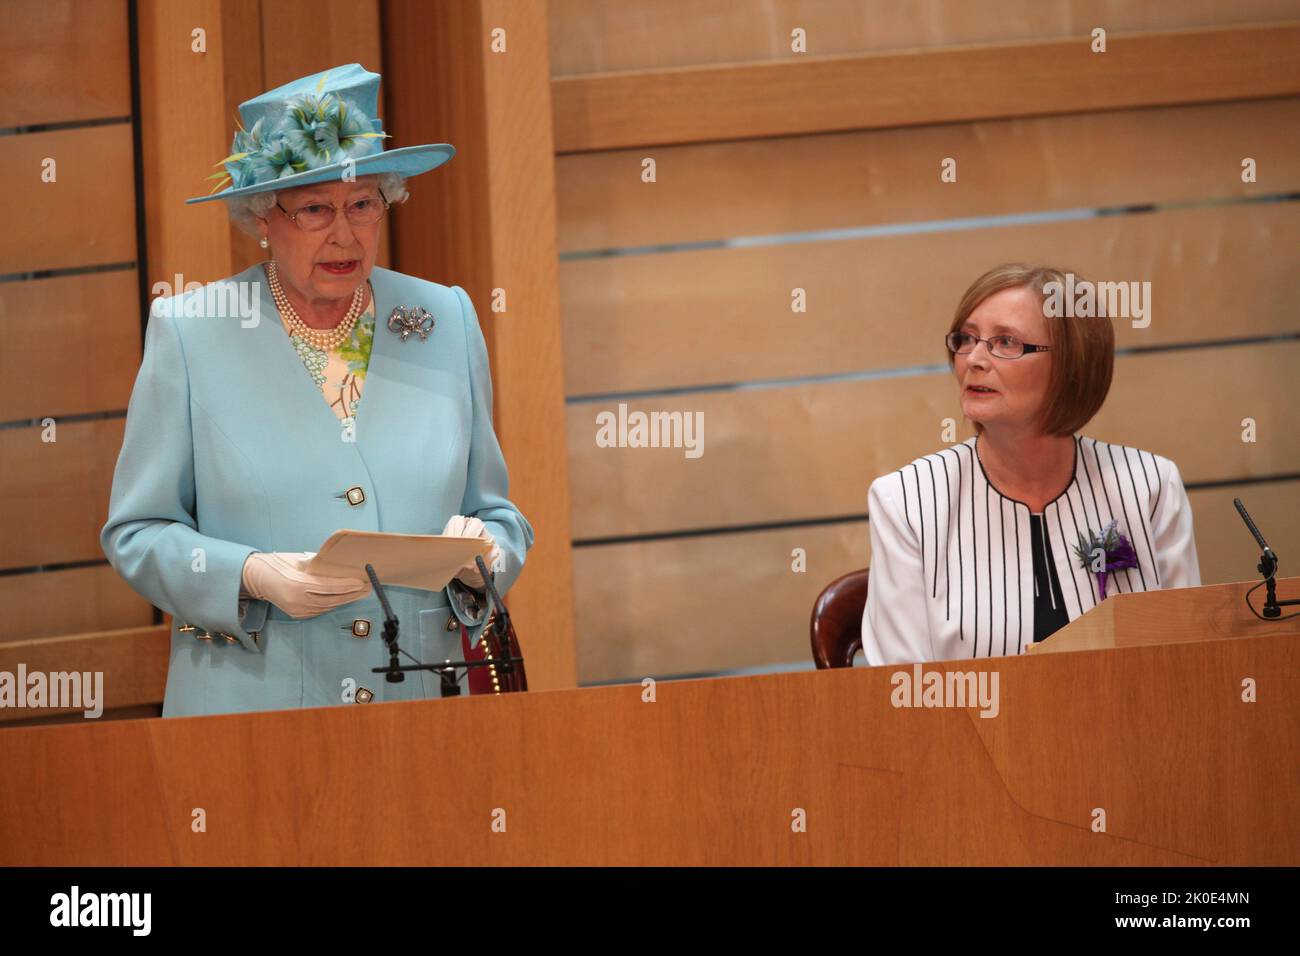 1 luglio 2011 la regina Elisabetta II si rivolge al Parlamento in occasione dell'apertura ufficiale della quarta sessione del Parlamento scozzese a Edimburgo. Foto Stock